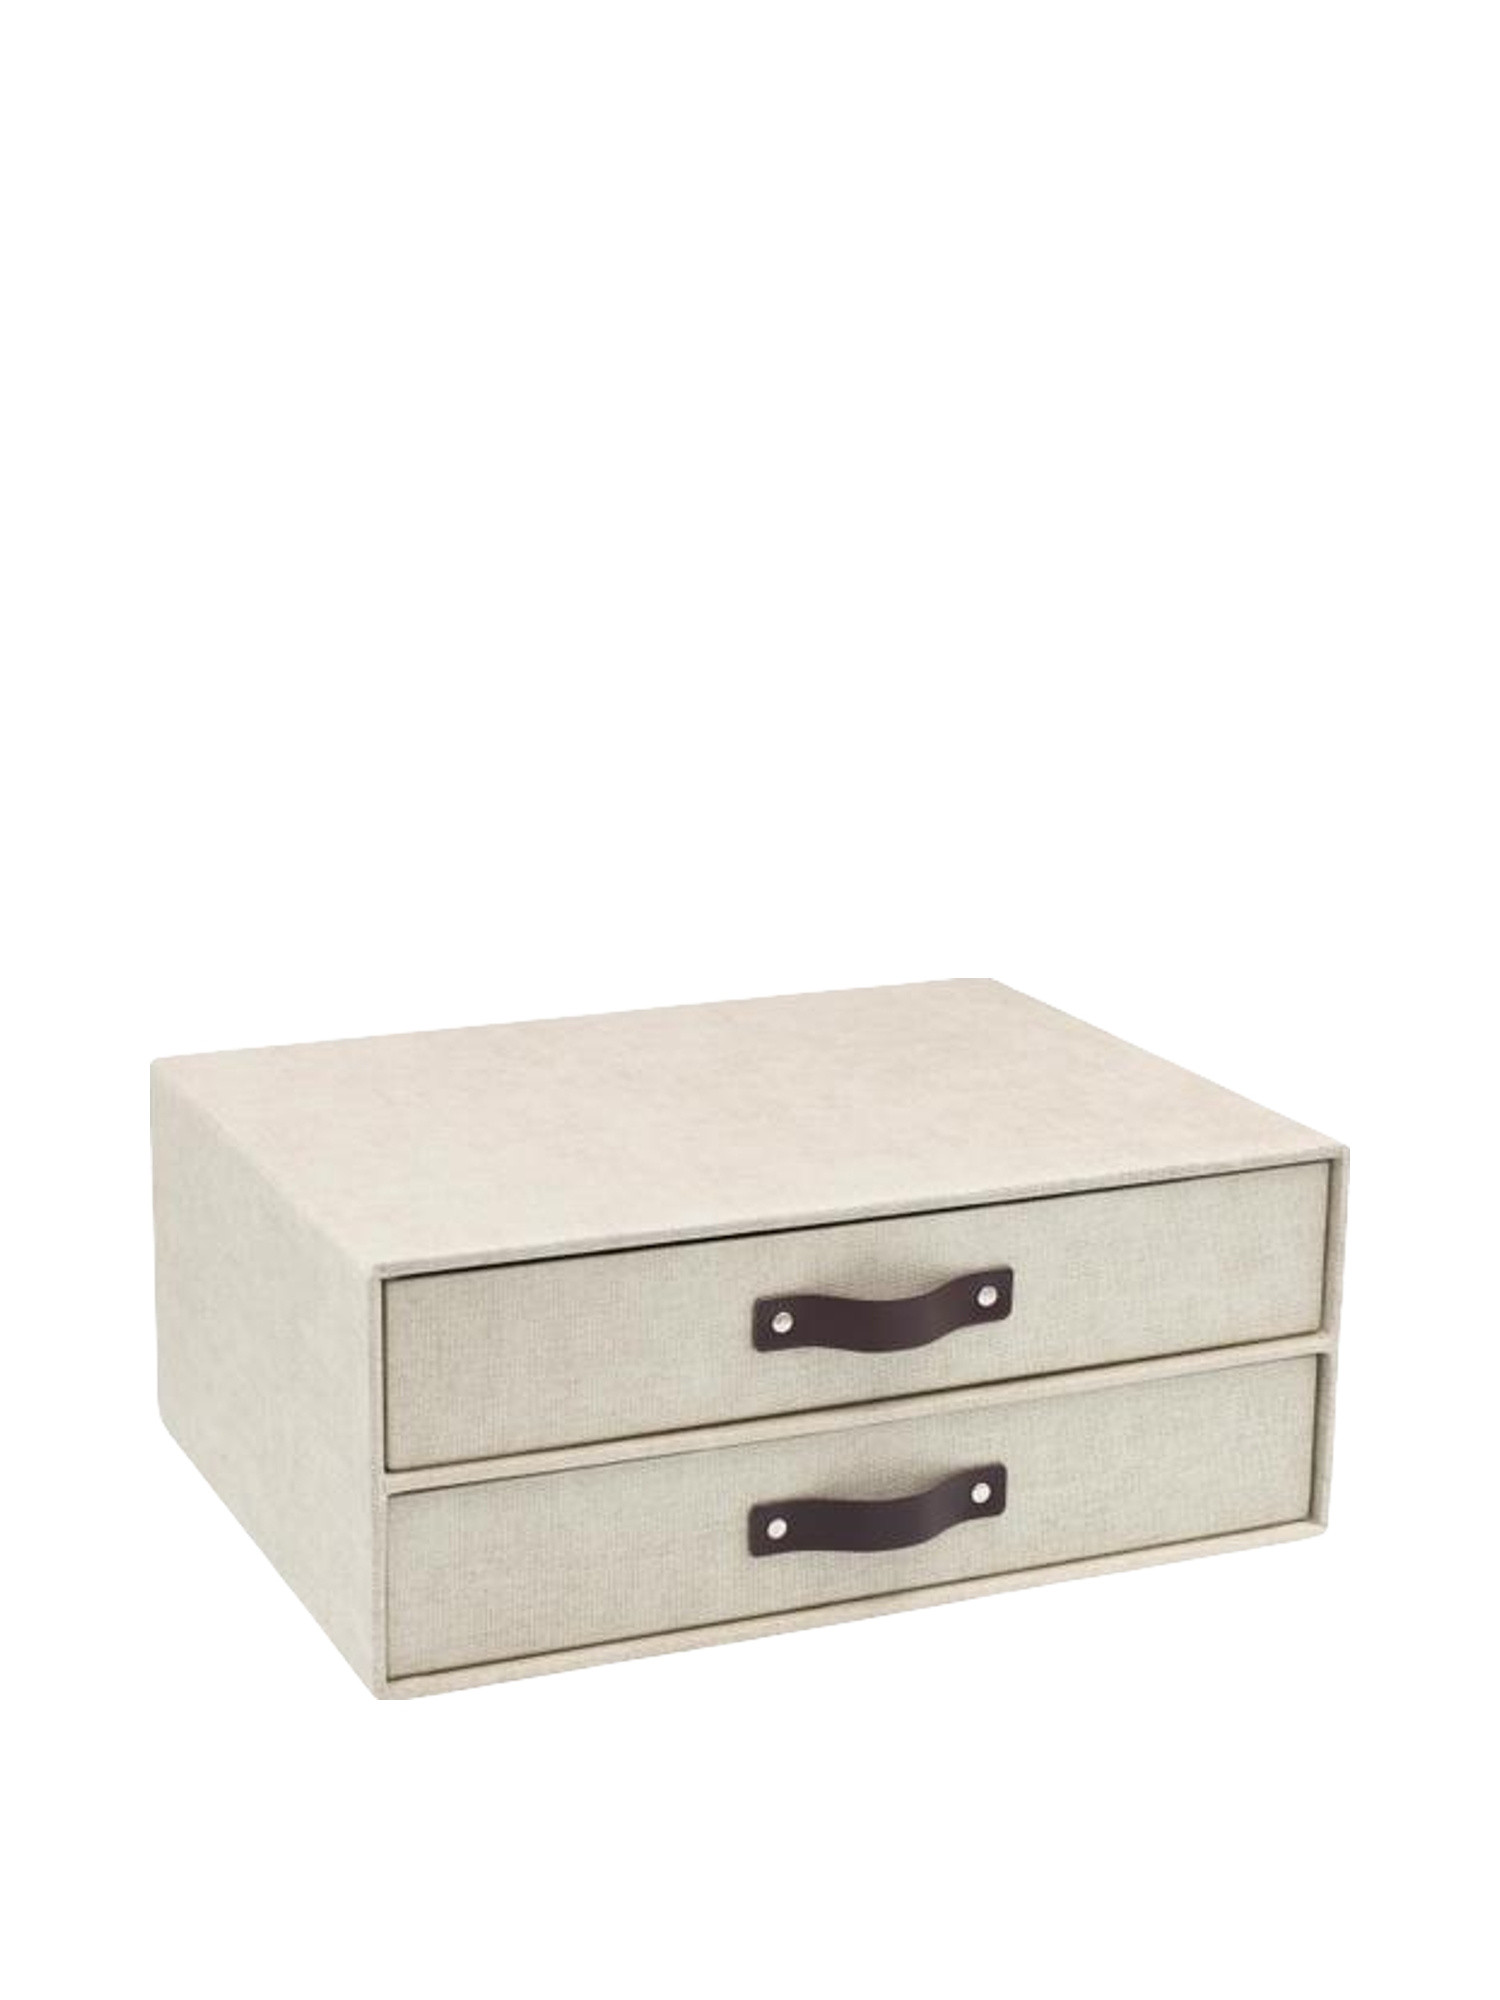 Birger desk drawer unit, Beige, large image number 0